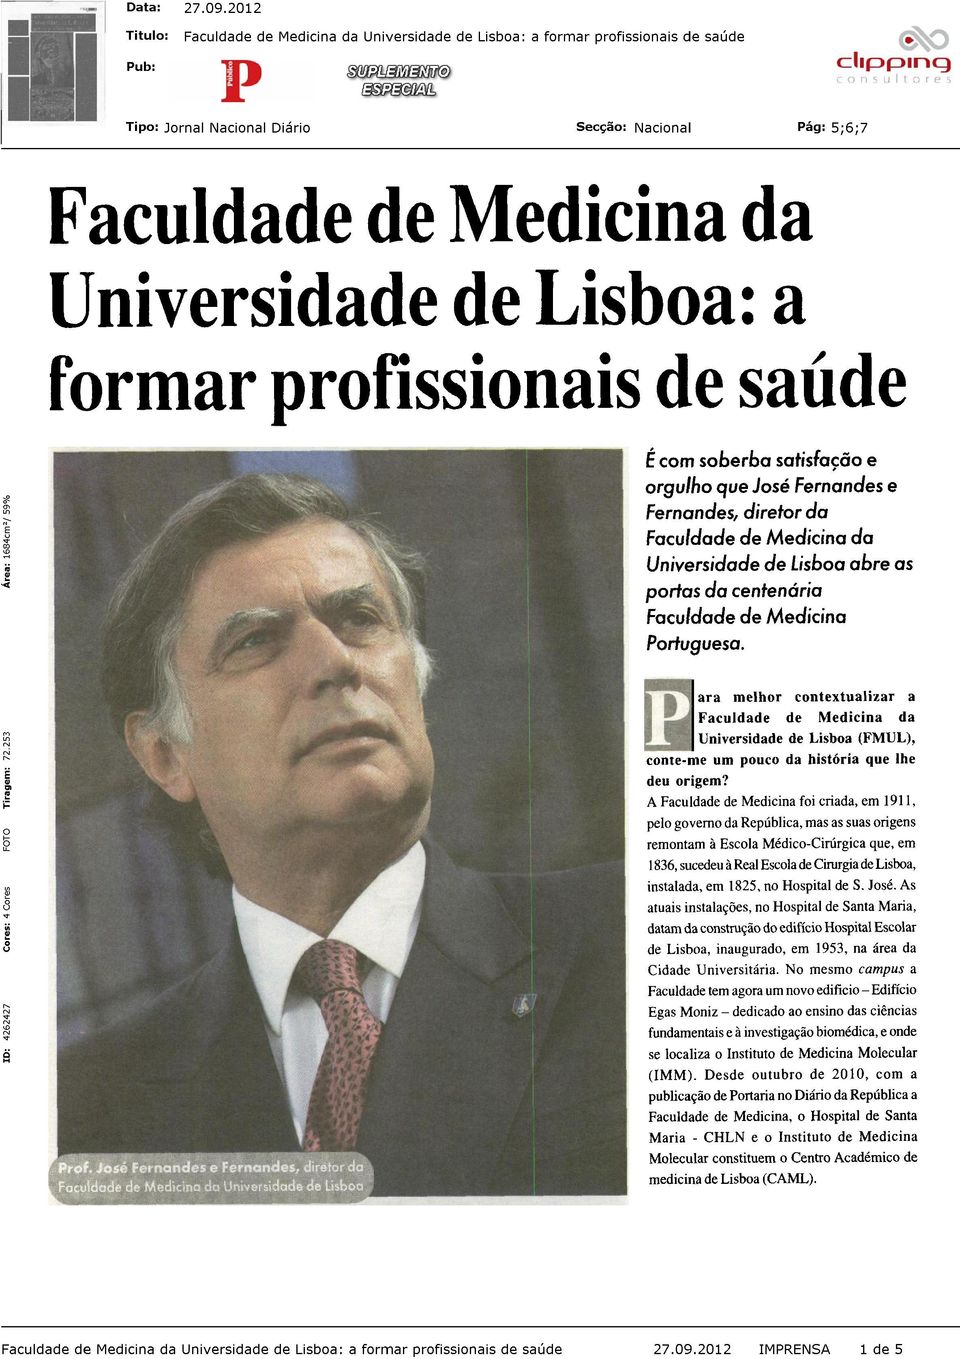 ara melhor contextualizar a Faculdade de Medicina da Universidade de Lisboa (FMUL), conte-me um pouco da história que lhe deu origem?